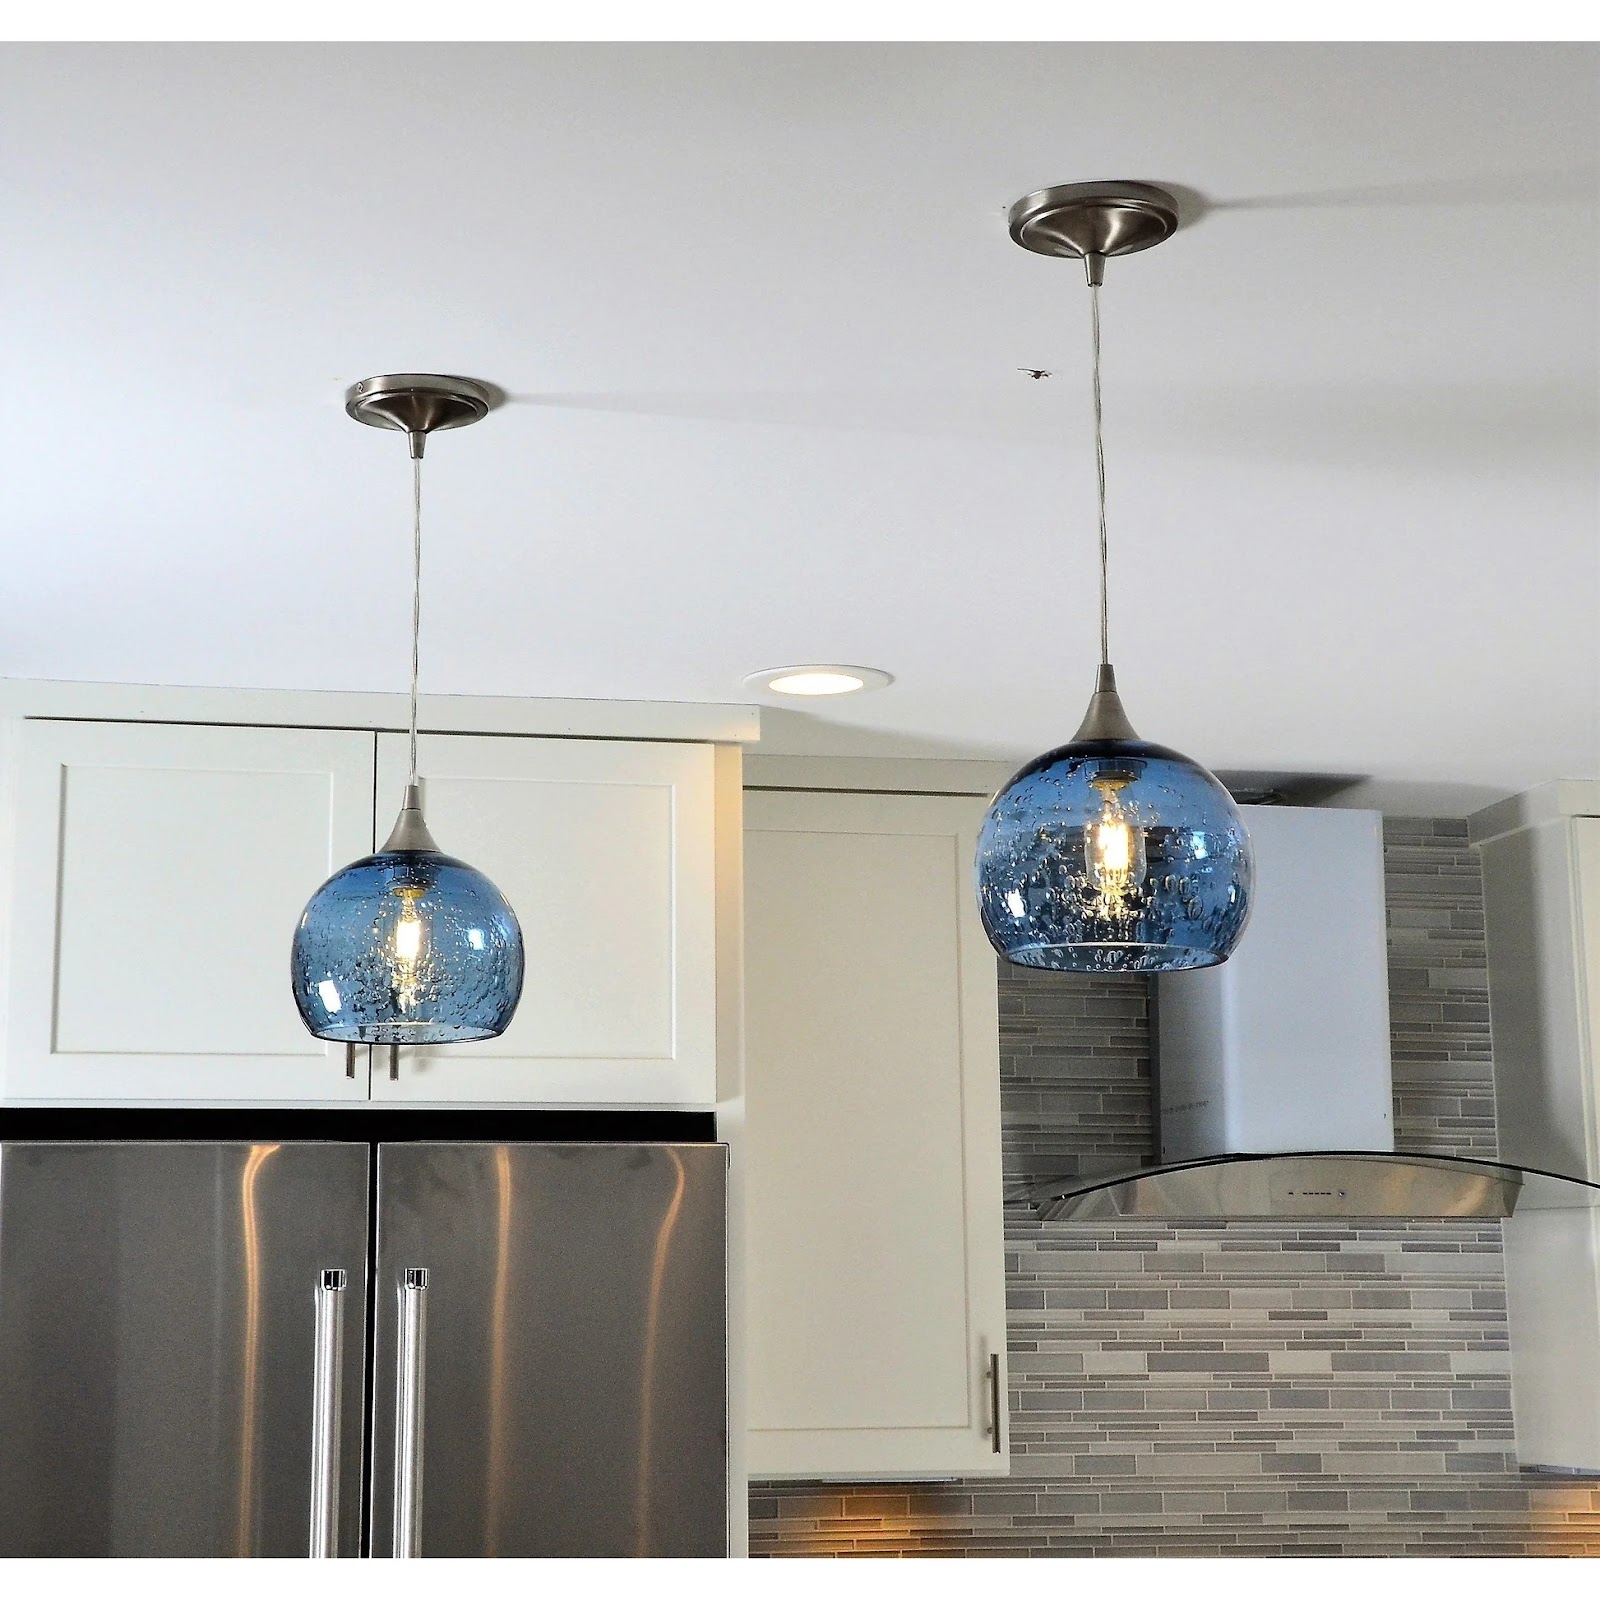 10 Trending Light Design Ideas For Modern Home Interiors